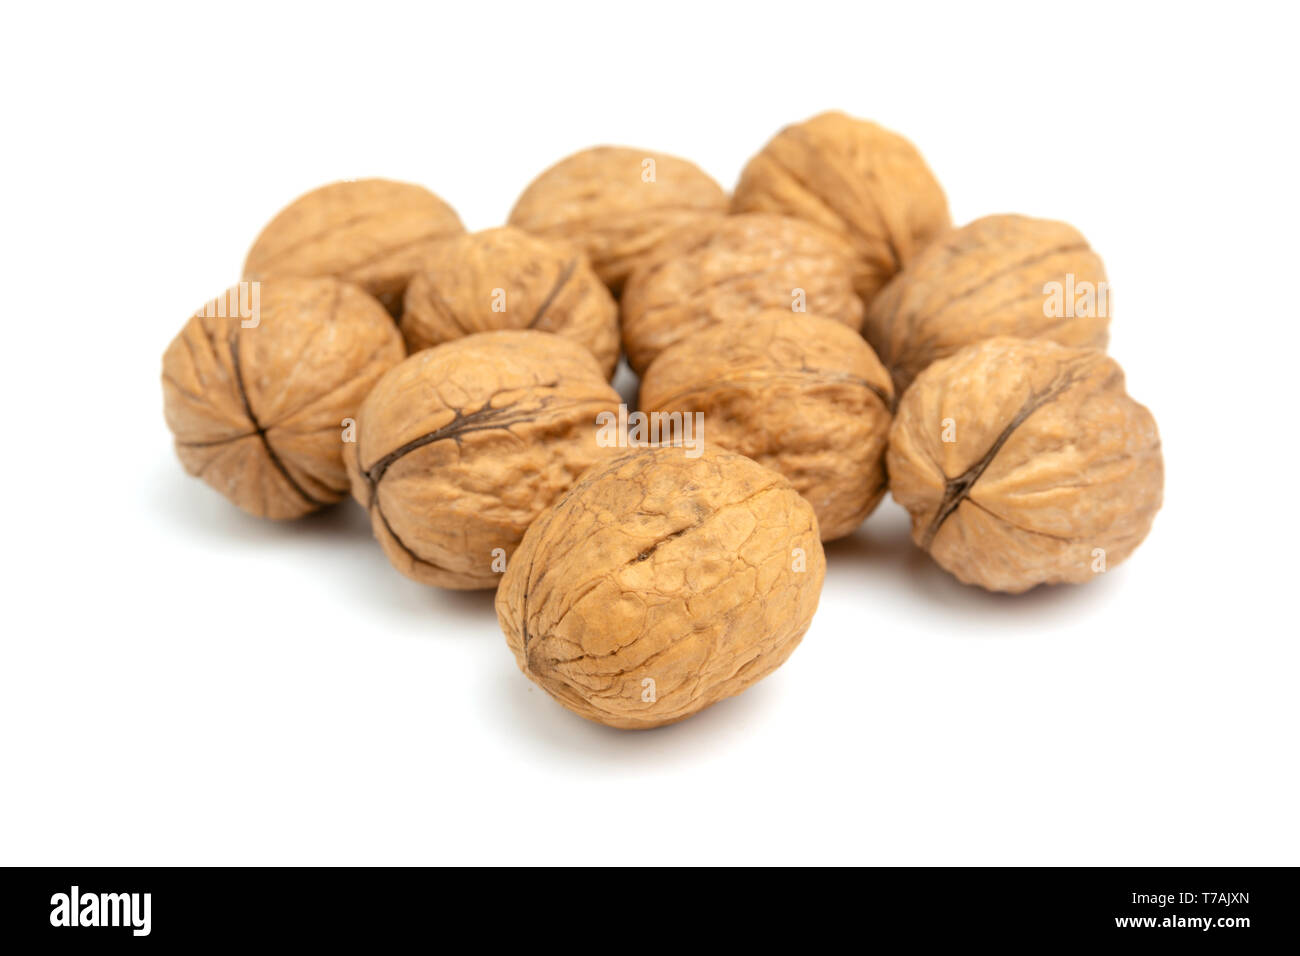 Close-up de nueces frescas aislado sobre fondo blanco. Tuercas saludable con los ácidos grasos omega 3 y antioxidantes para una piel hermosa y vida sana. Foto de stock